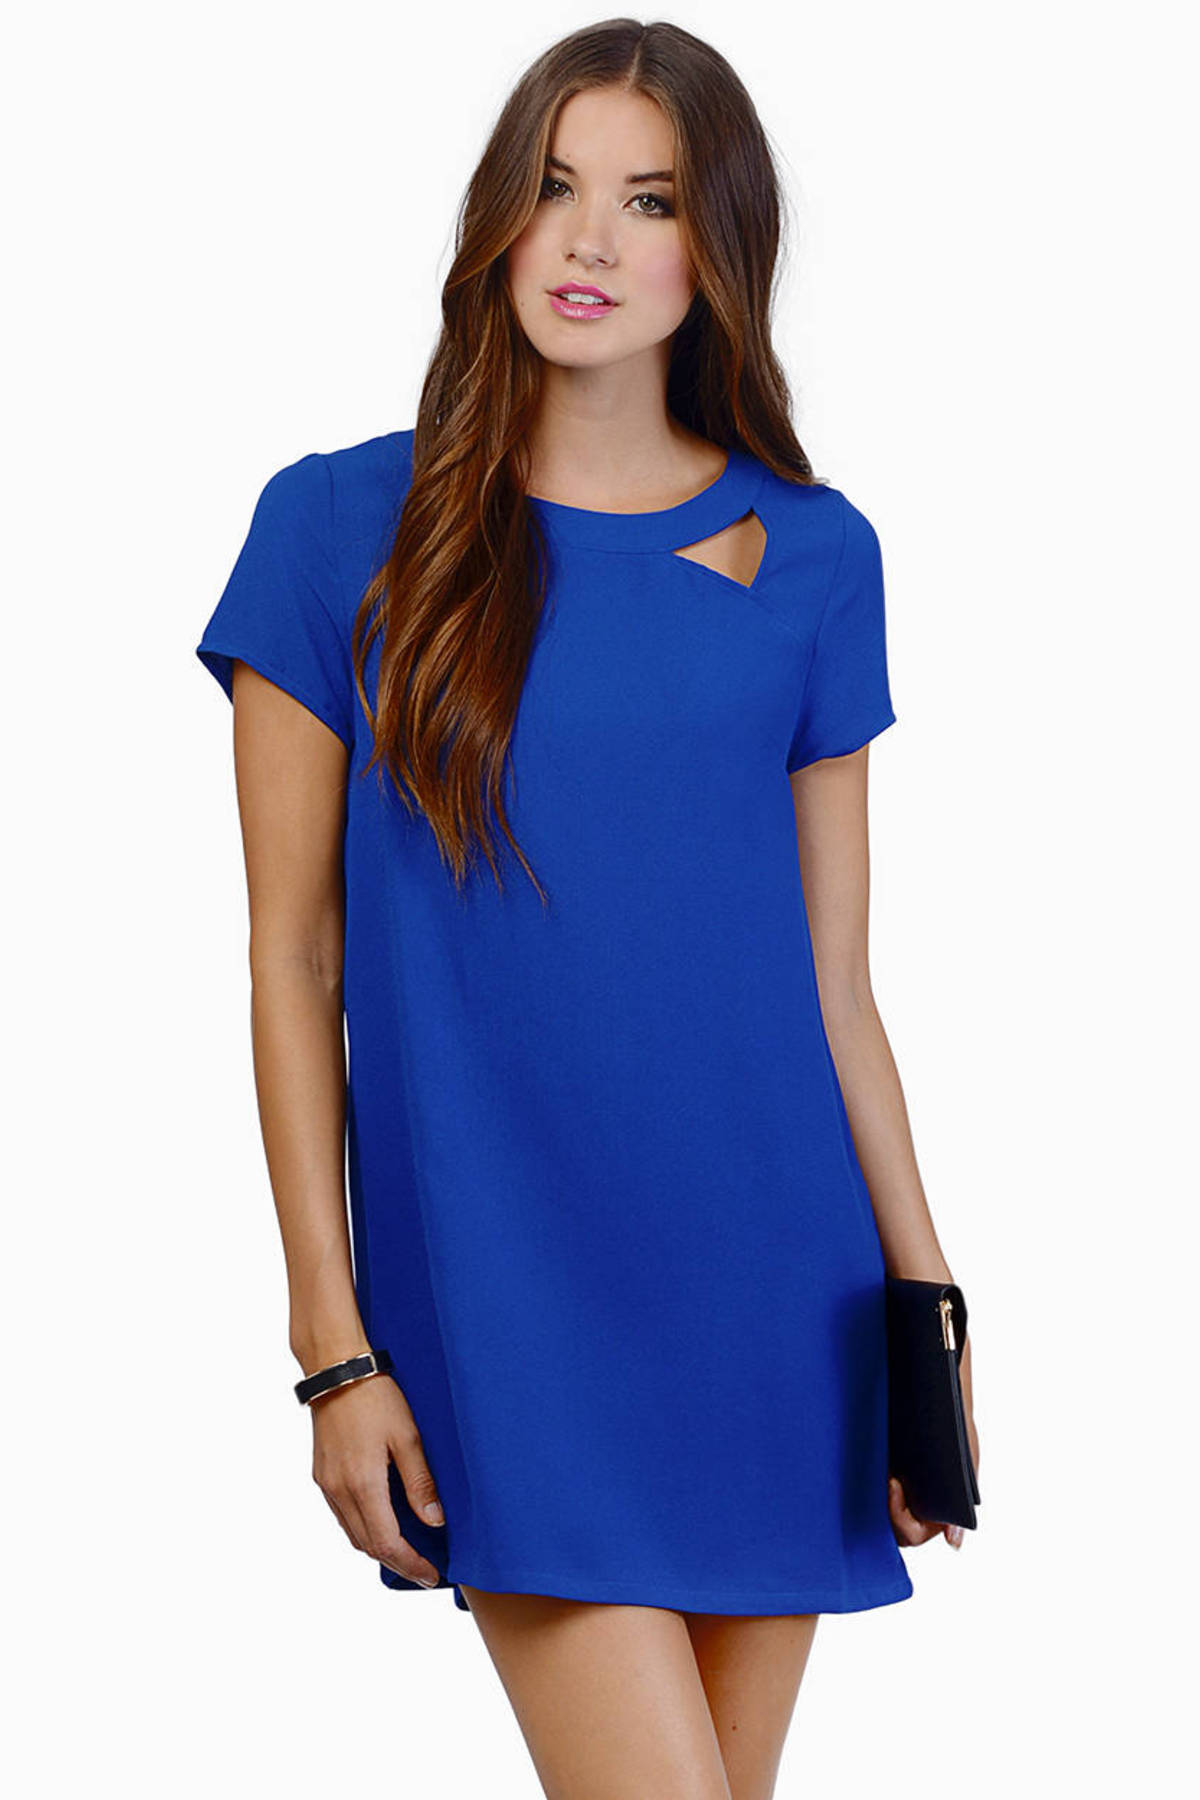 Blue Shift Dress - Open Back Shirt Dress - Royal Blue T Shirt Dress